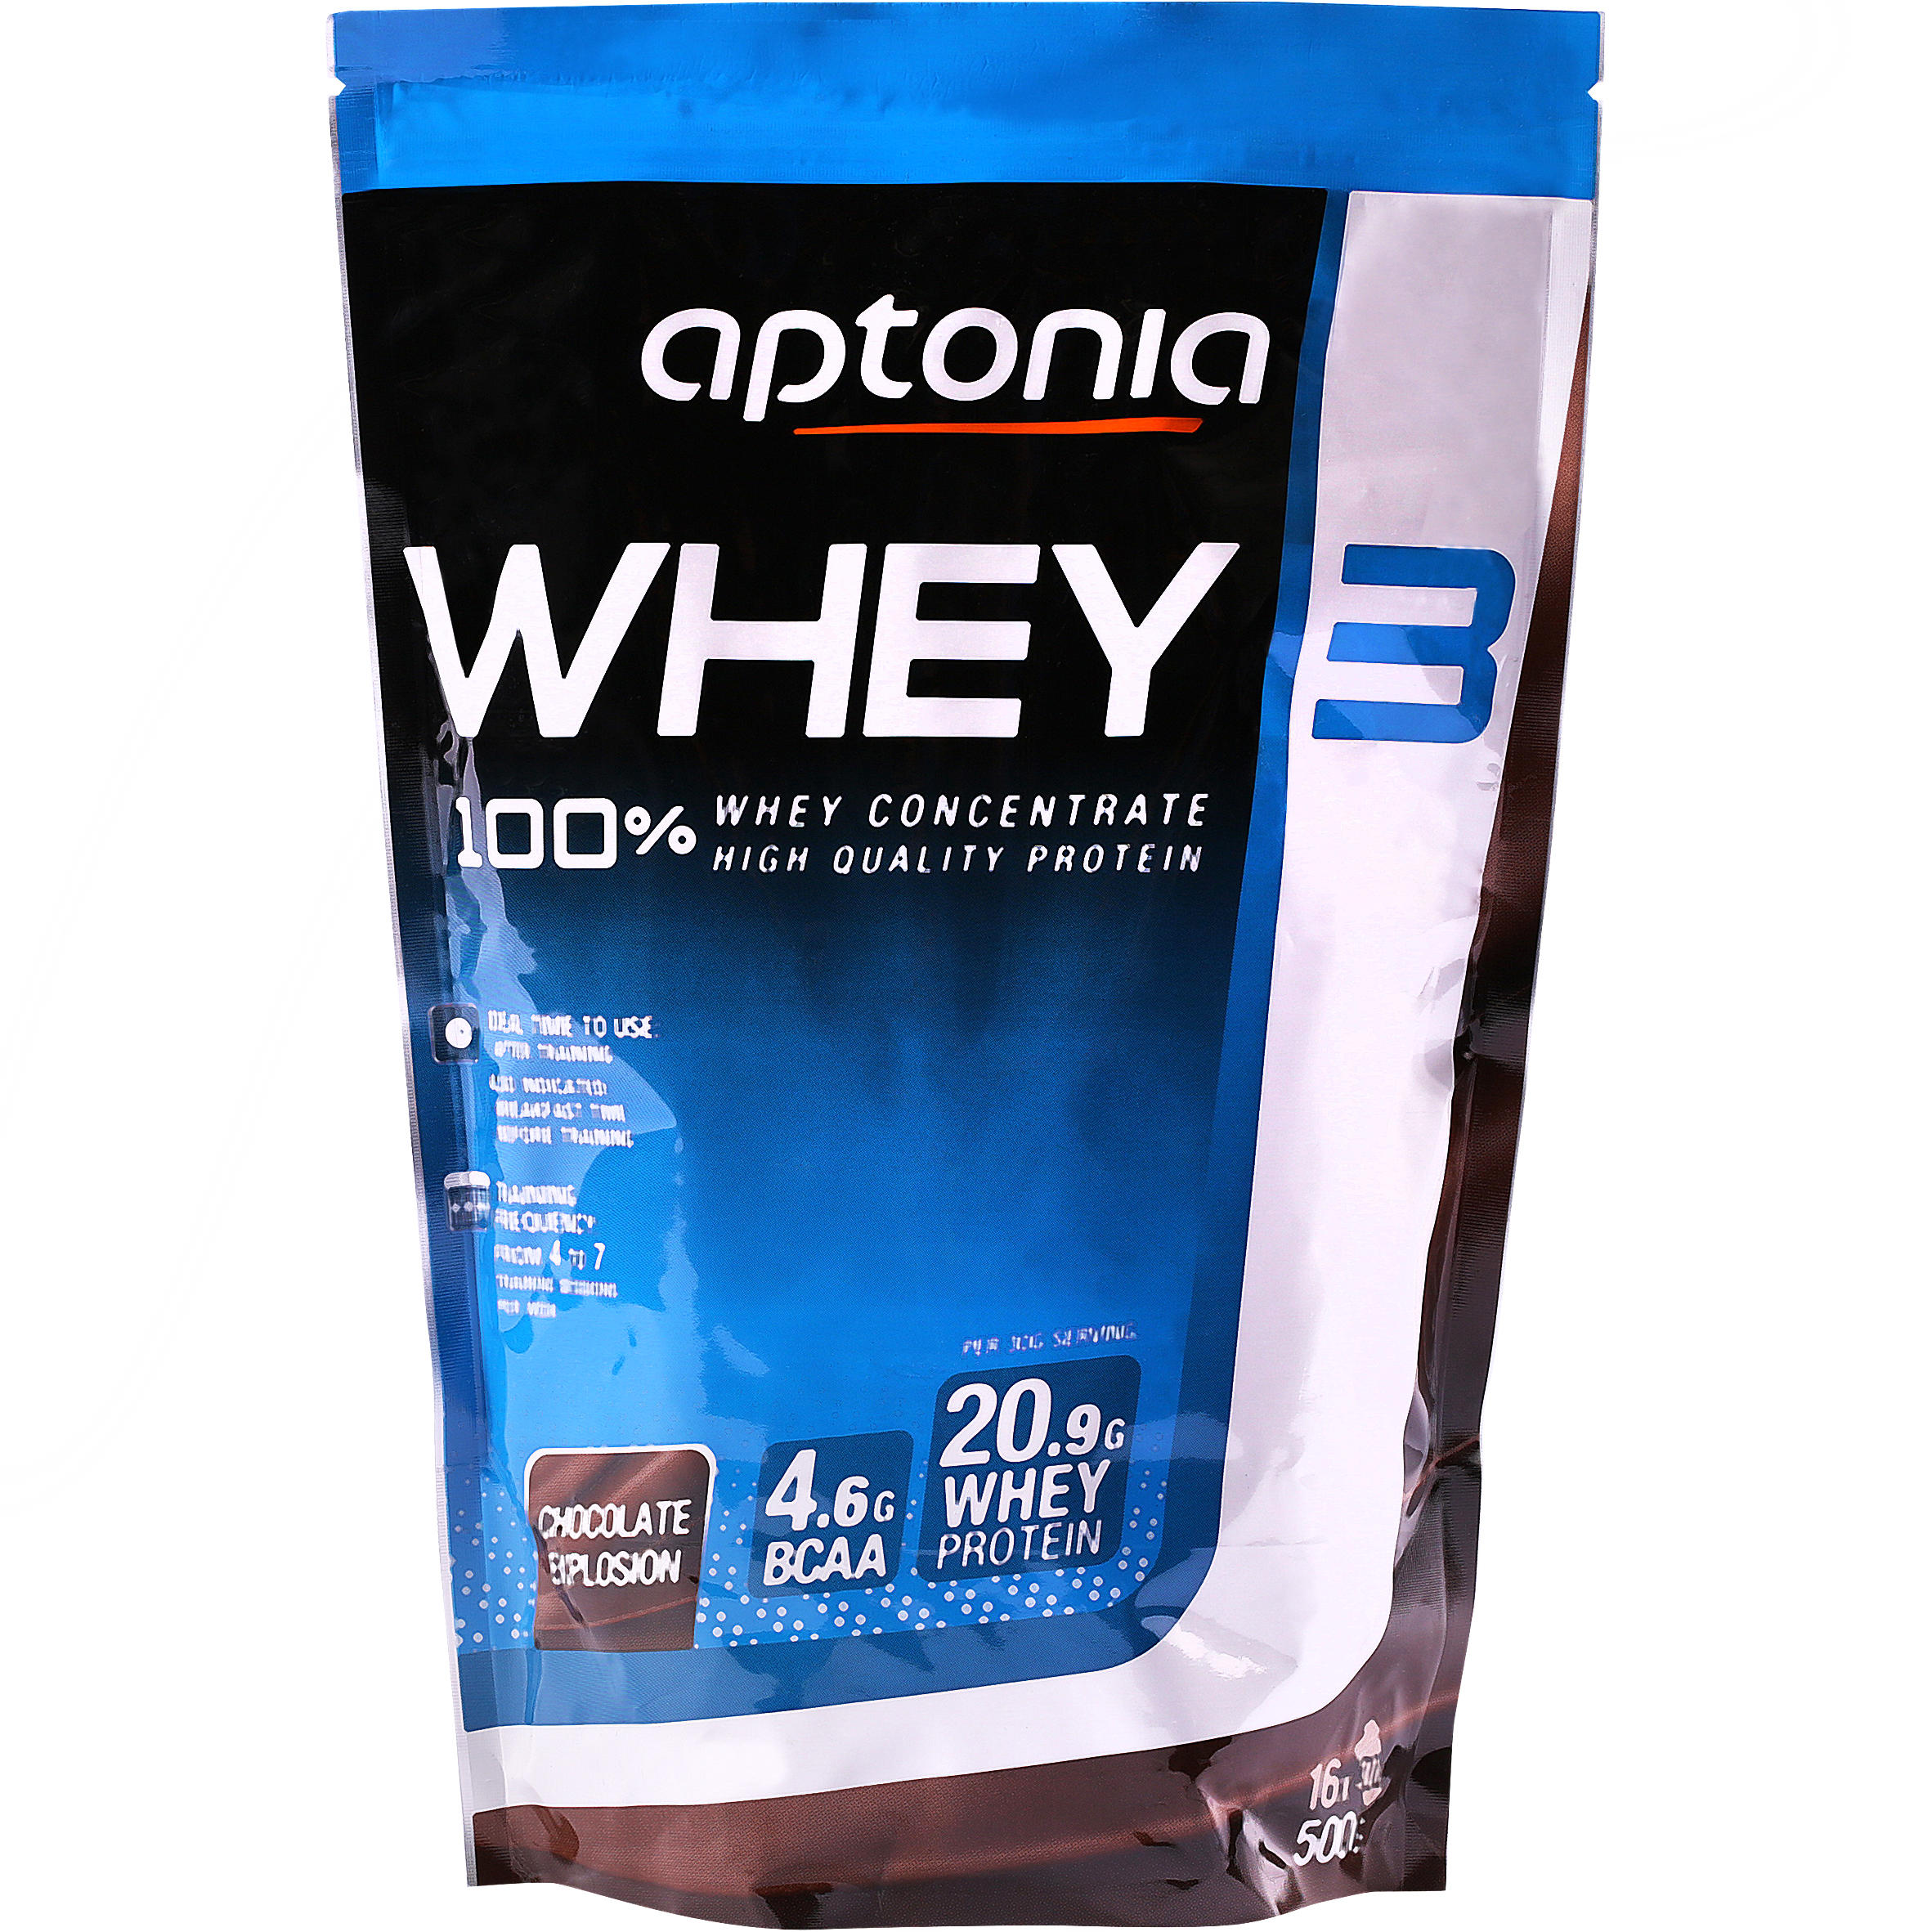 whey protein aptonia decathlon